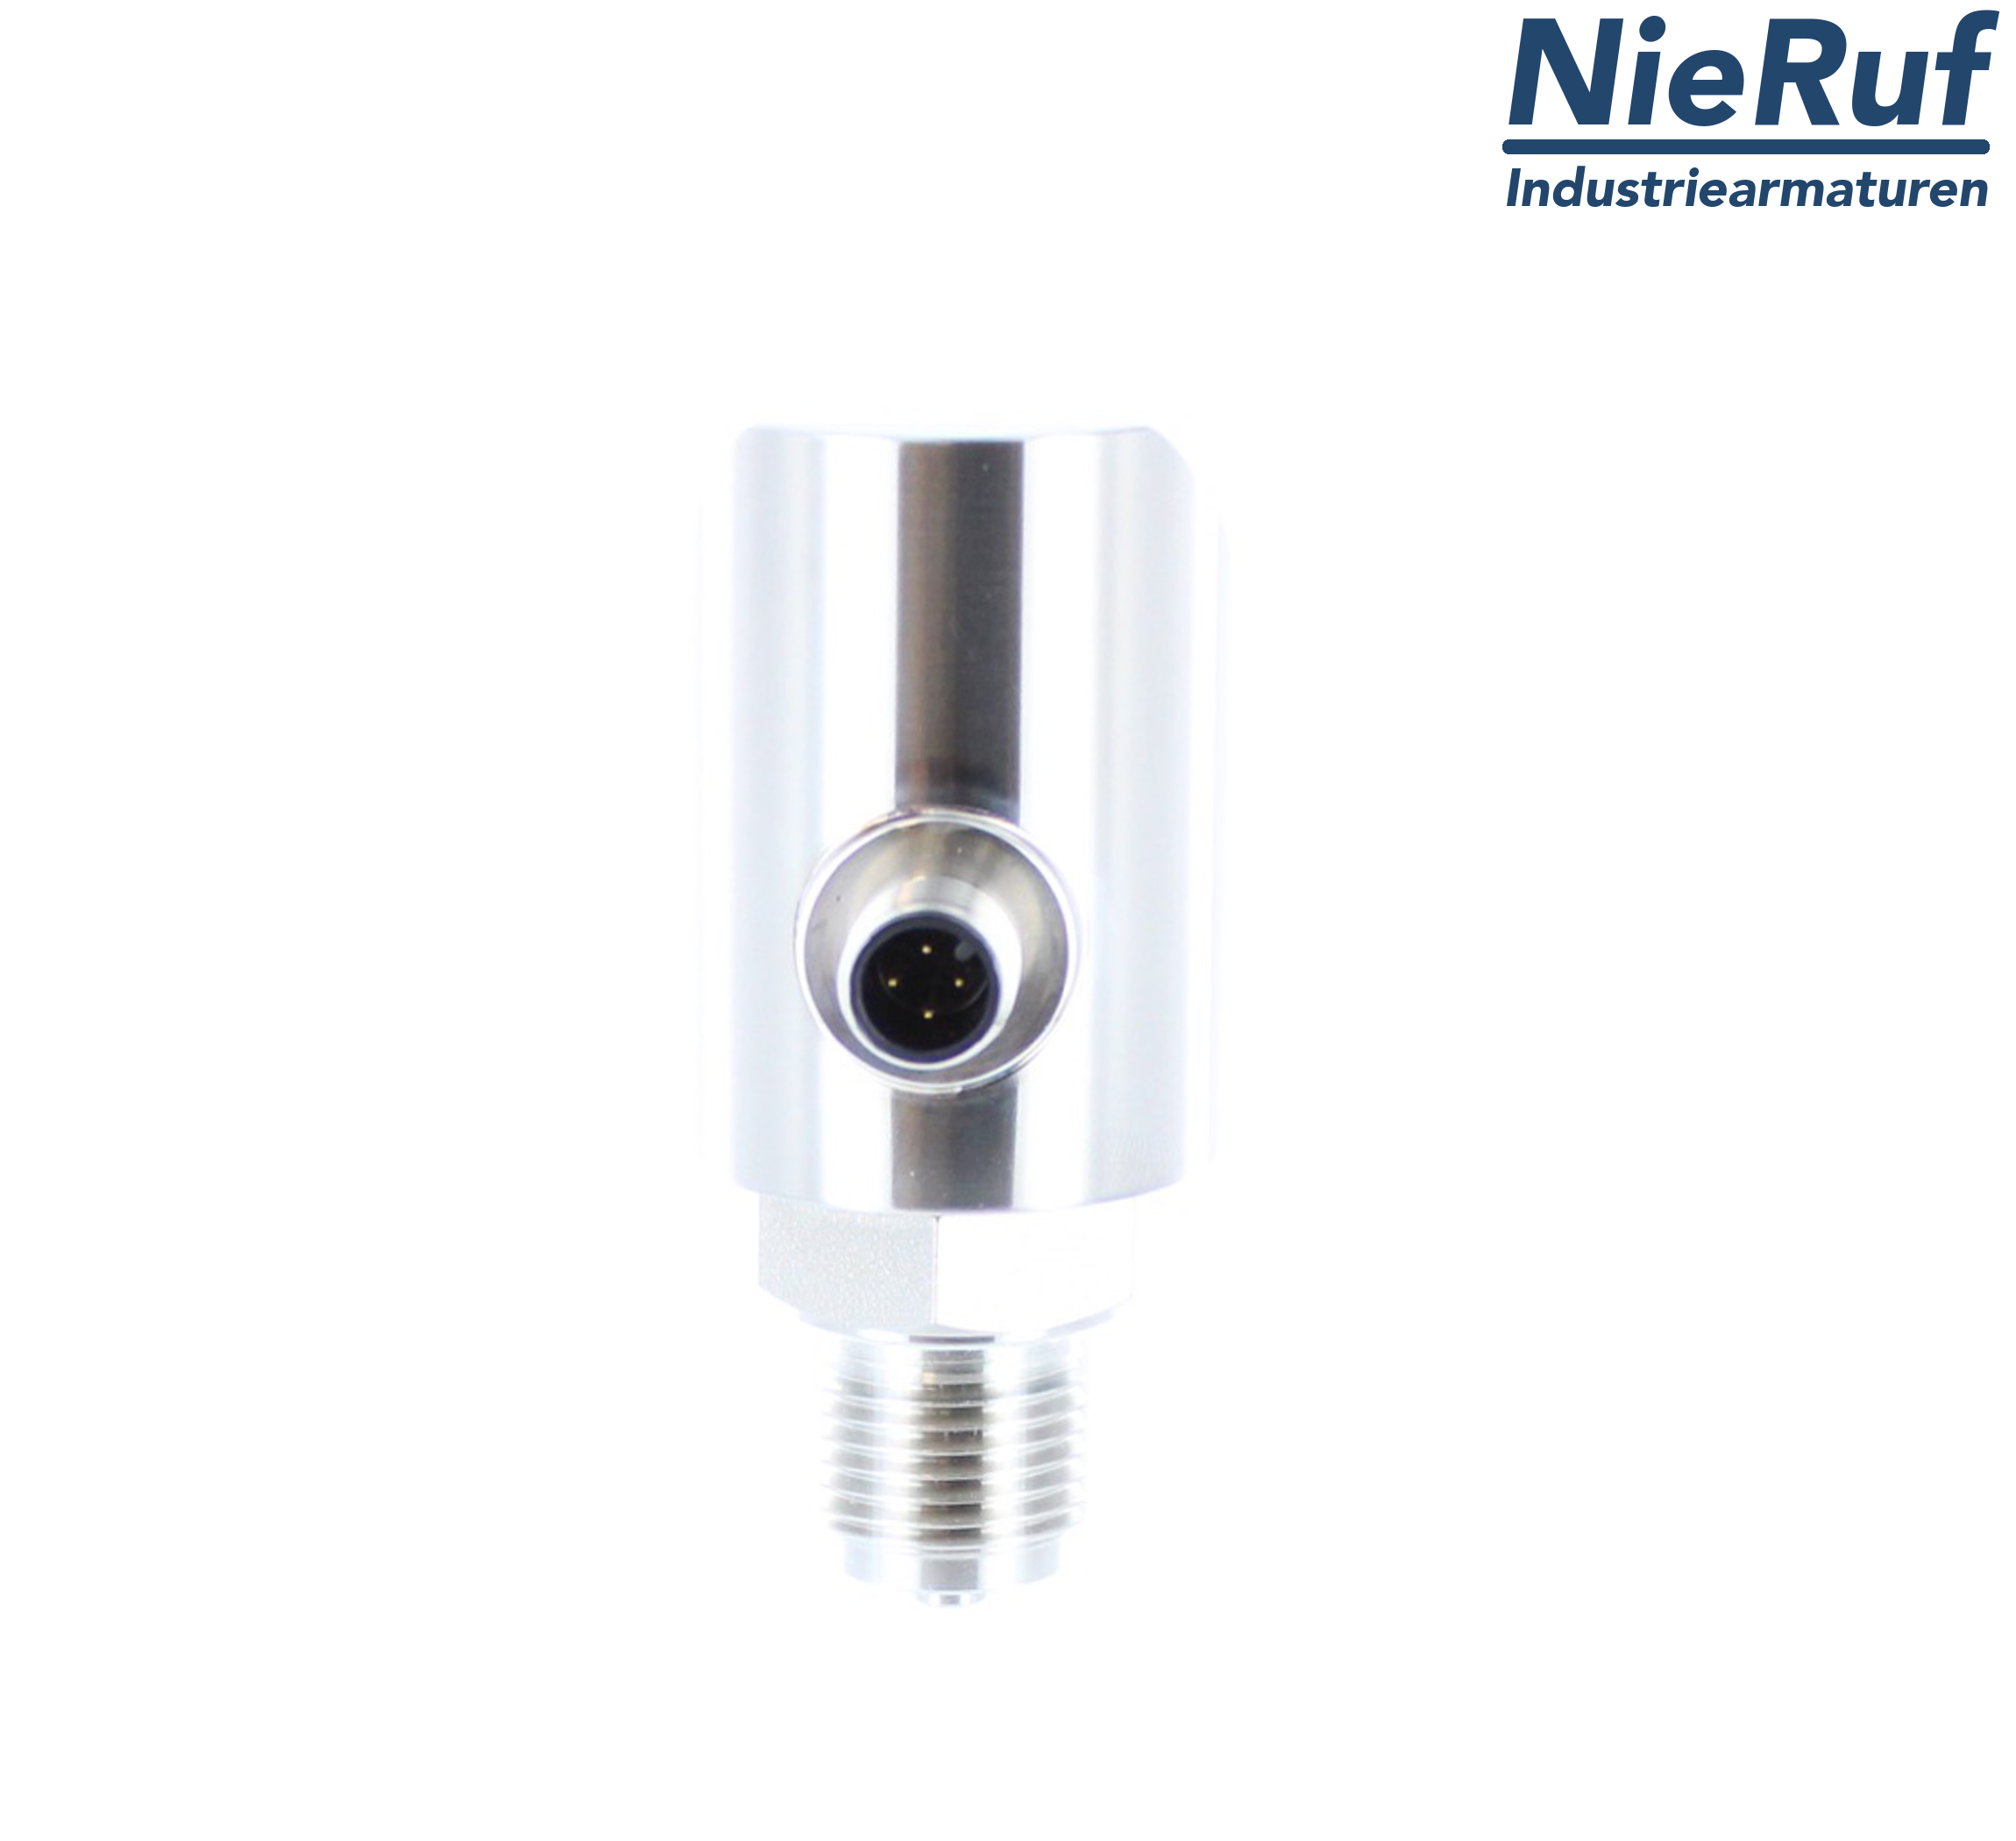 digital pressure sensor G 1/2" B 5-wire: 2xPNP, 1x4 - 20mA FPM 0,0 - 400,0 bar